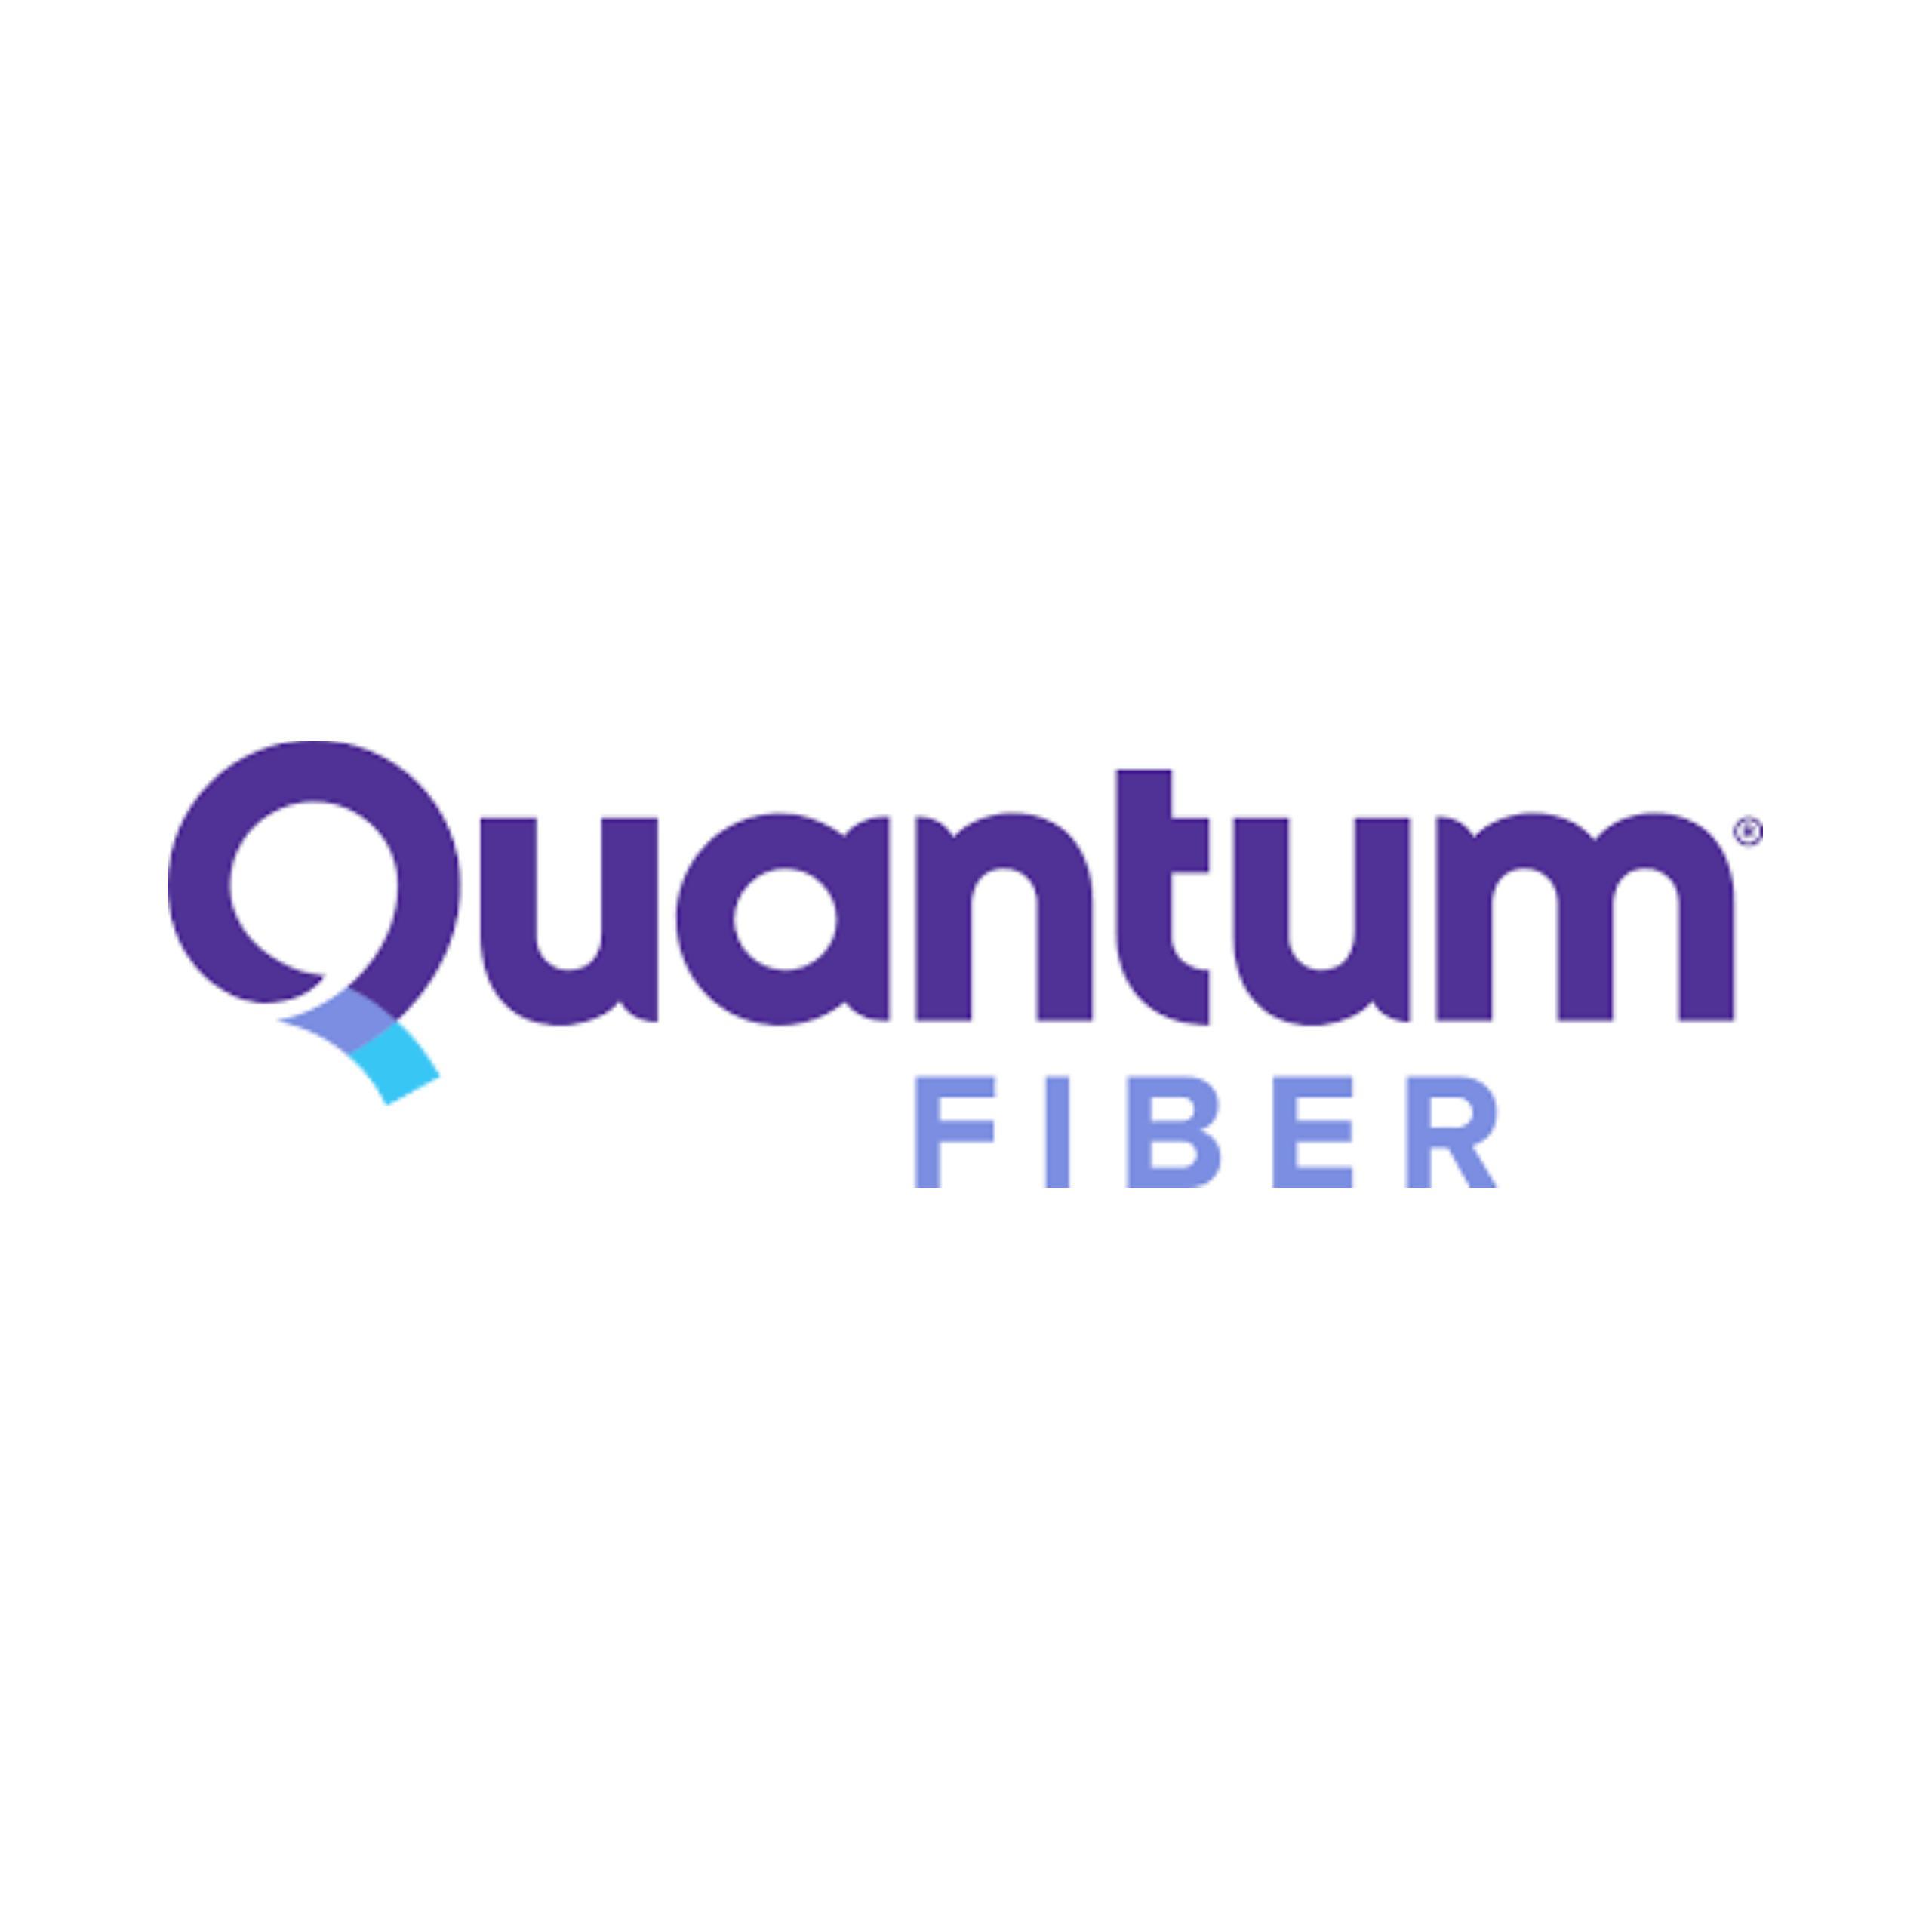 Quantum Fiber